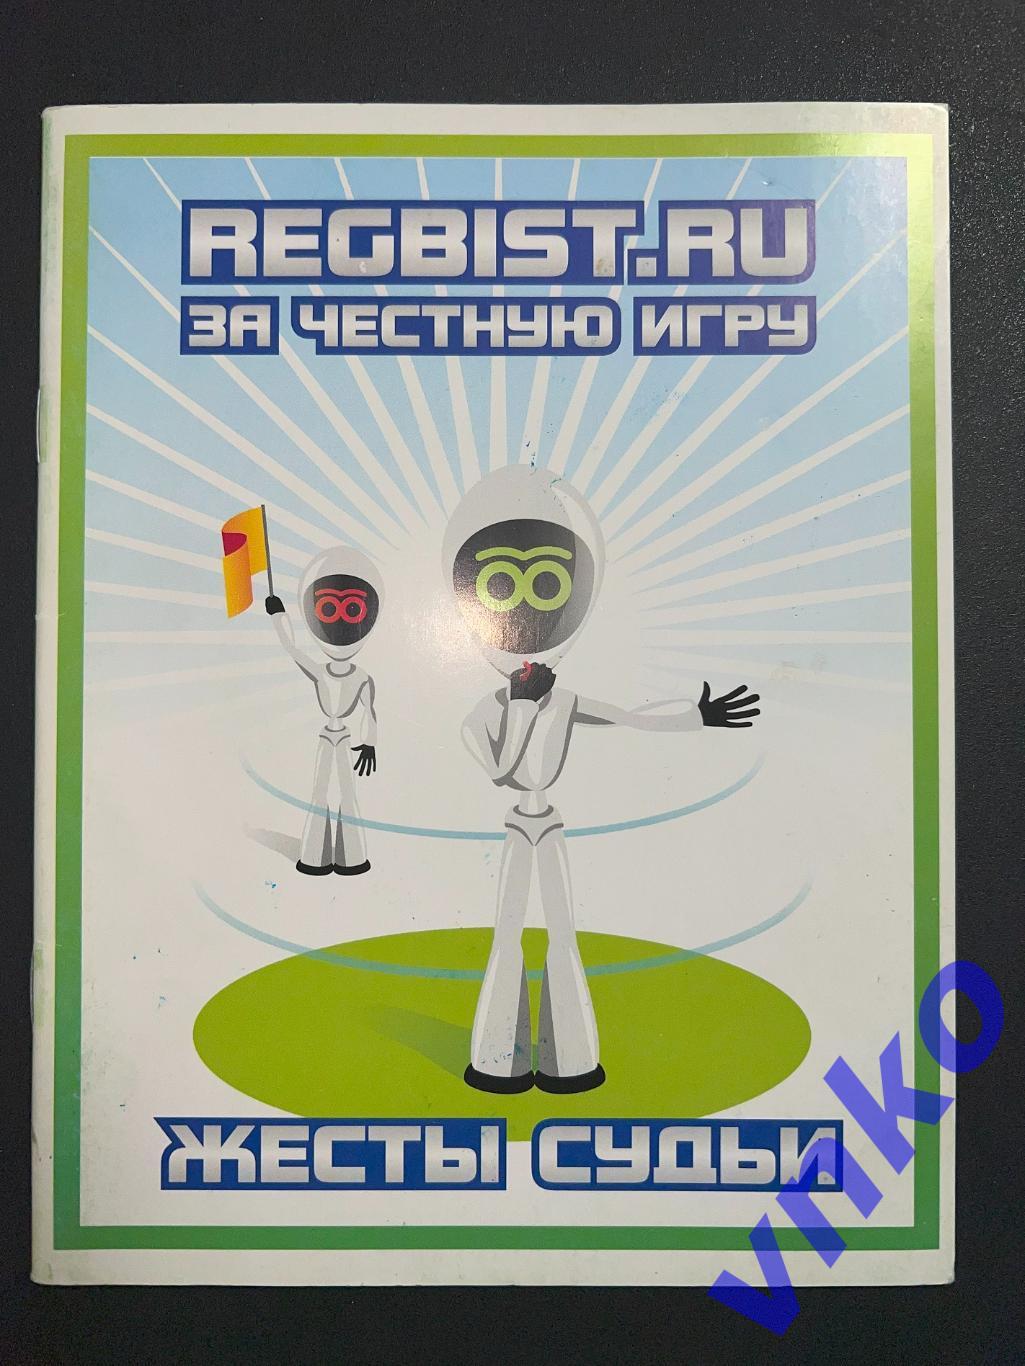 Регби Regbist.ru за честную игру. Жесты судьи